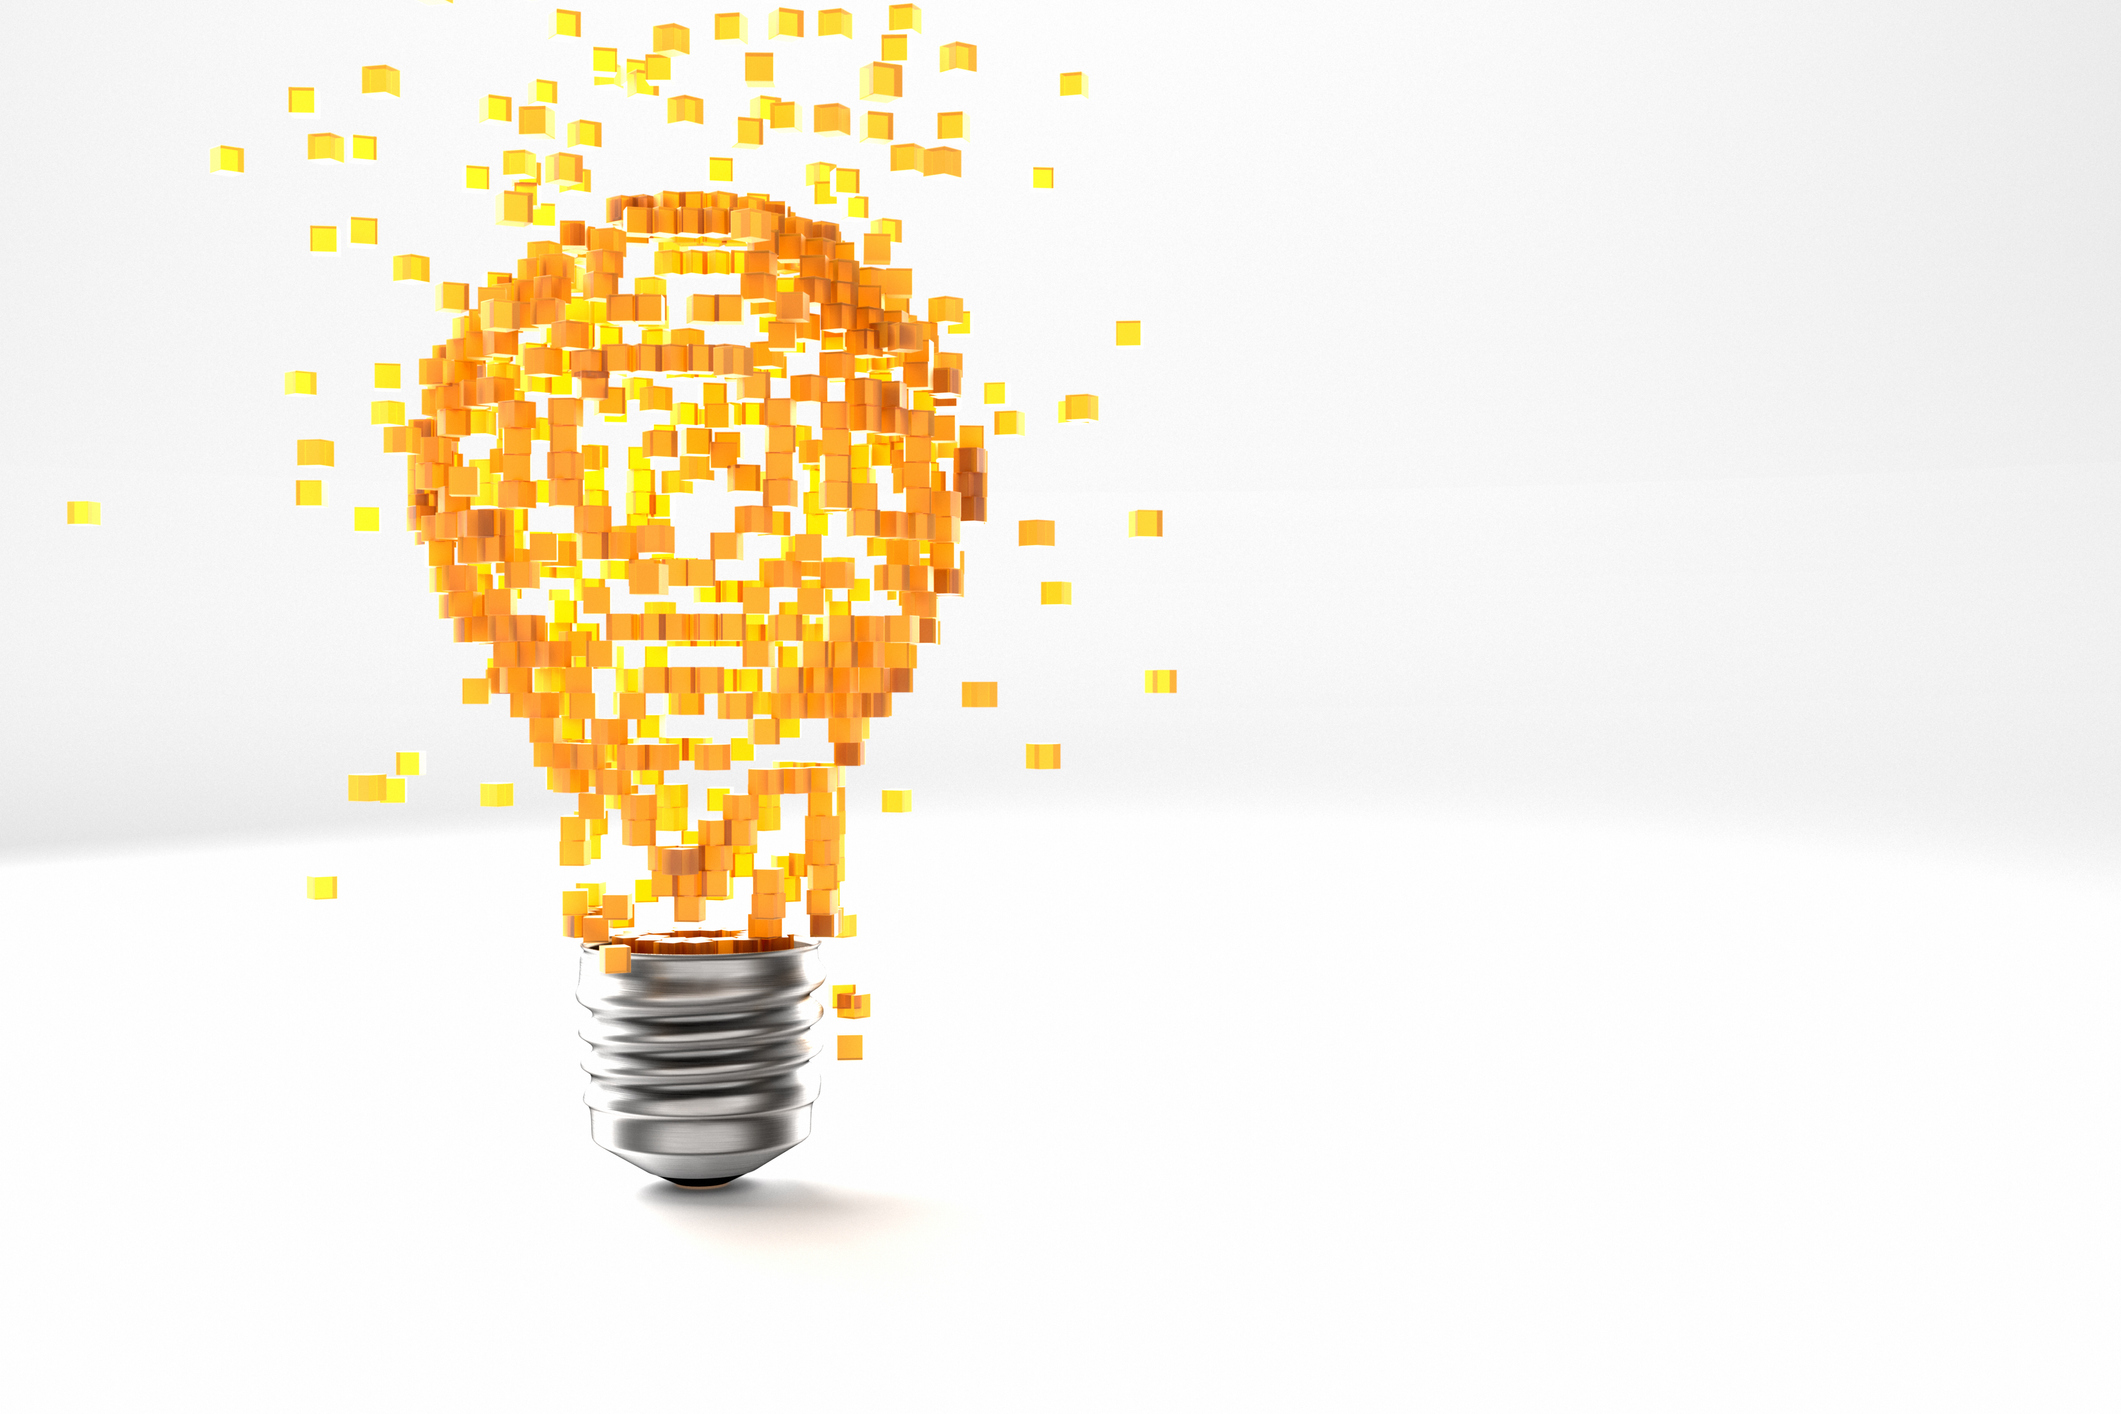 blog header image of lightbulb to symbolize innovation